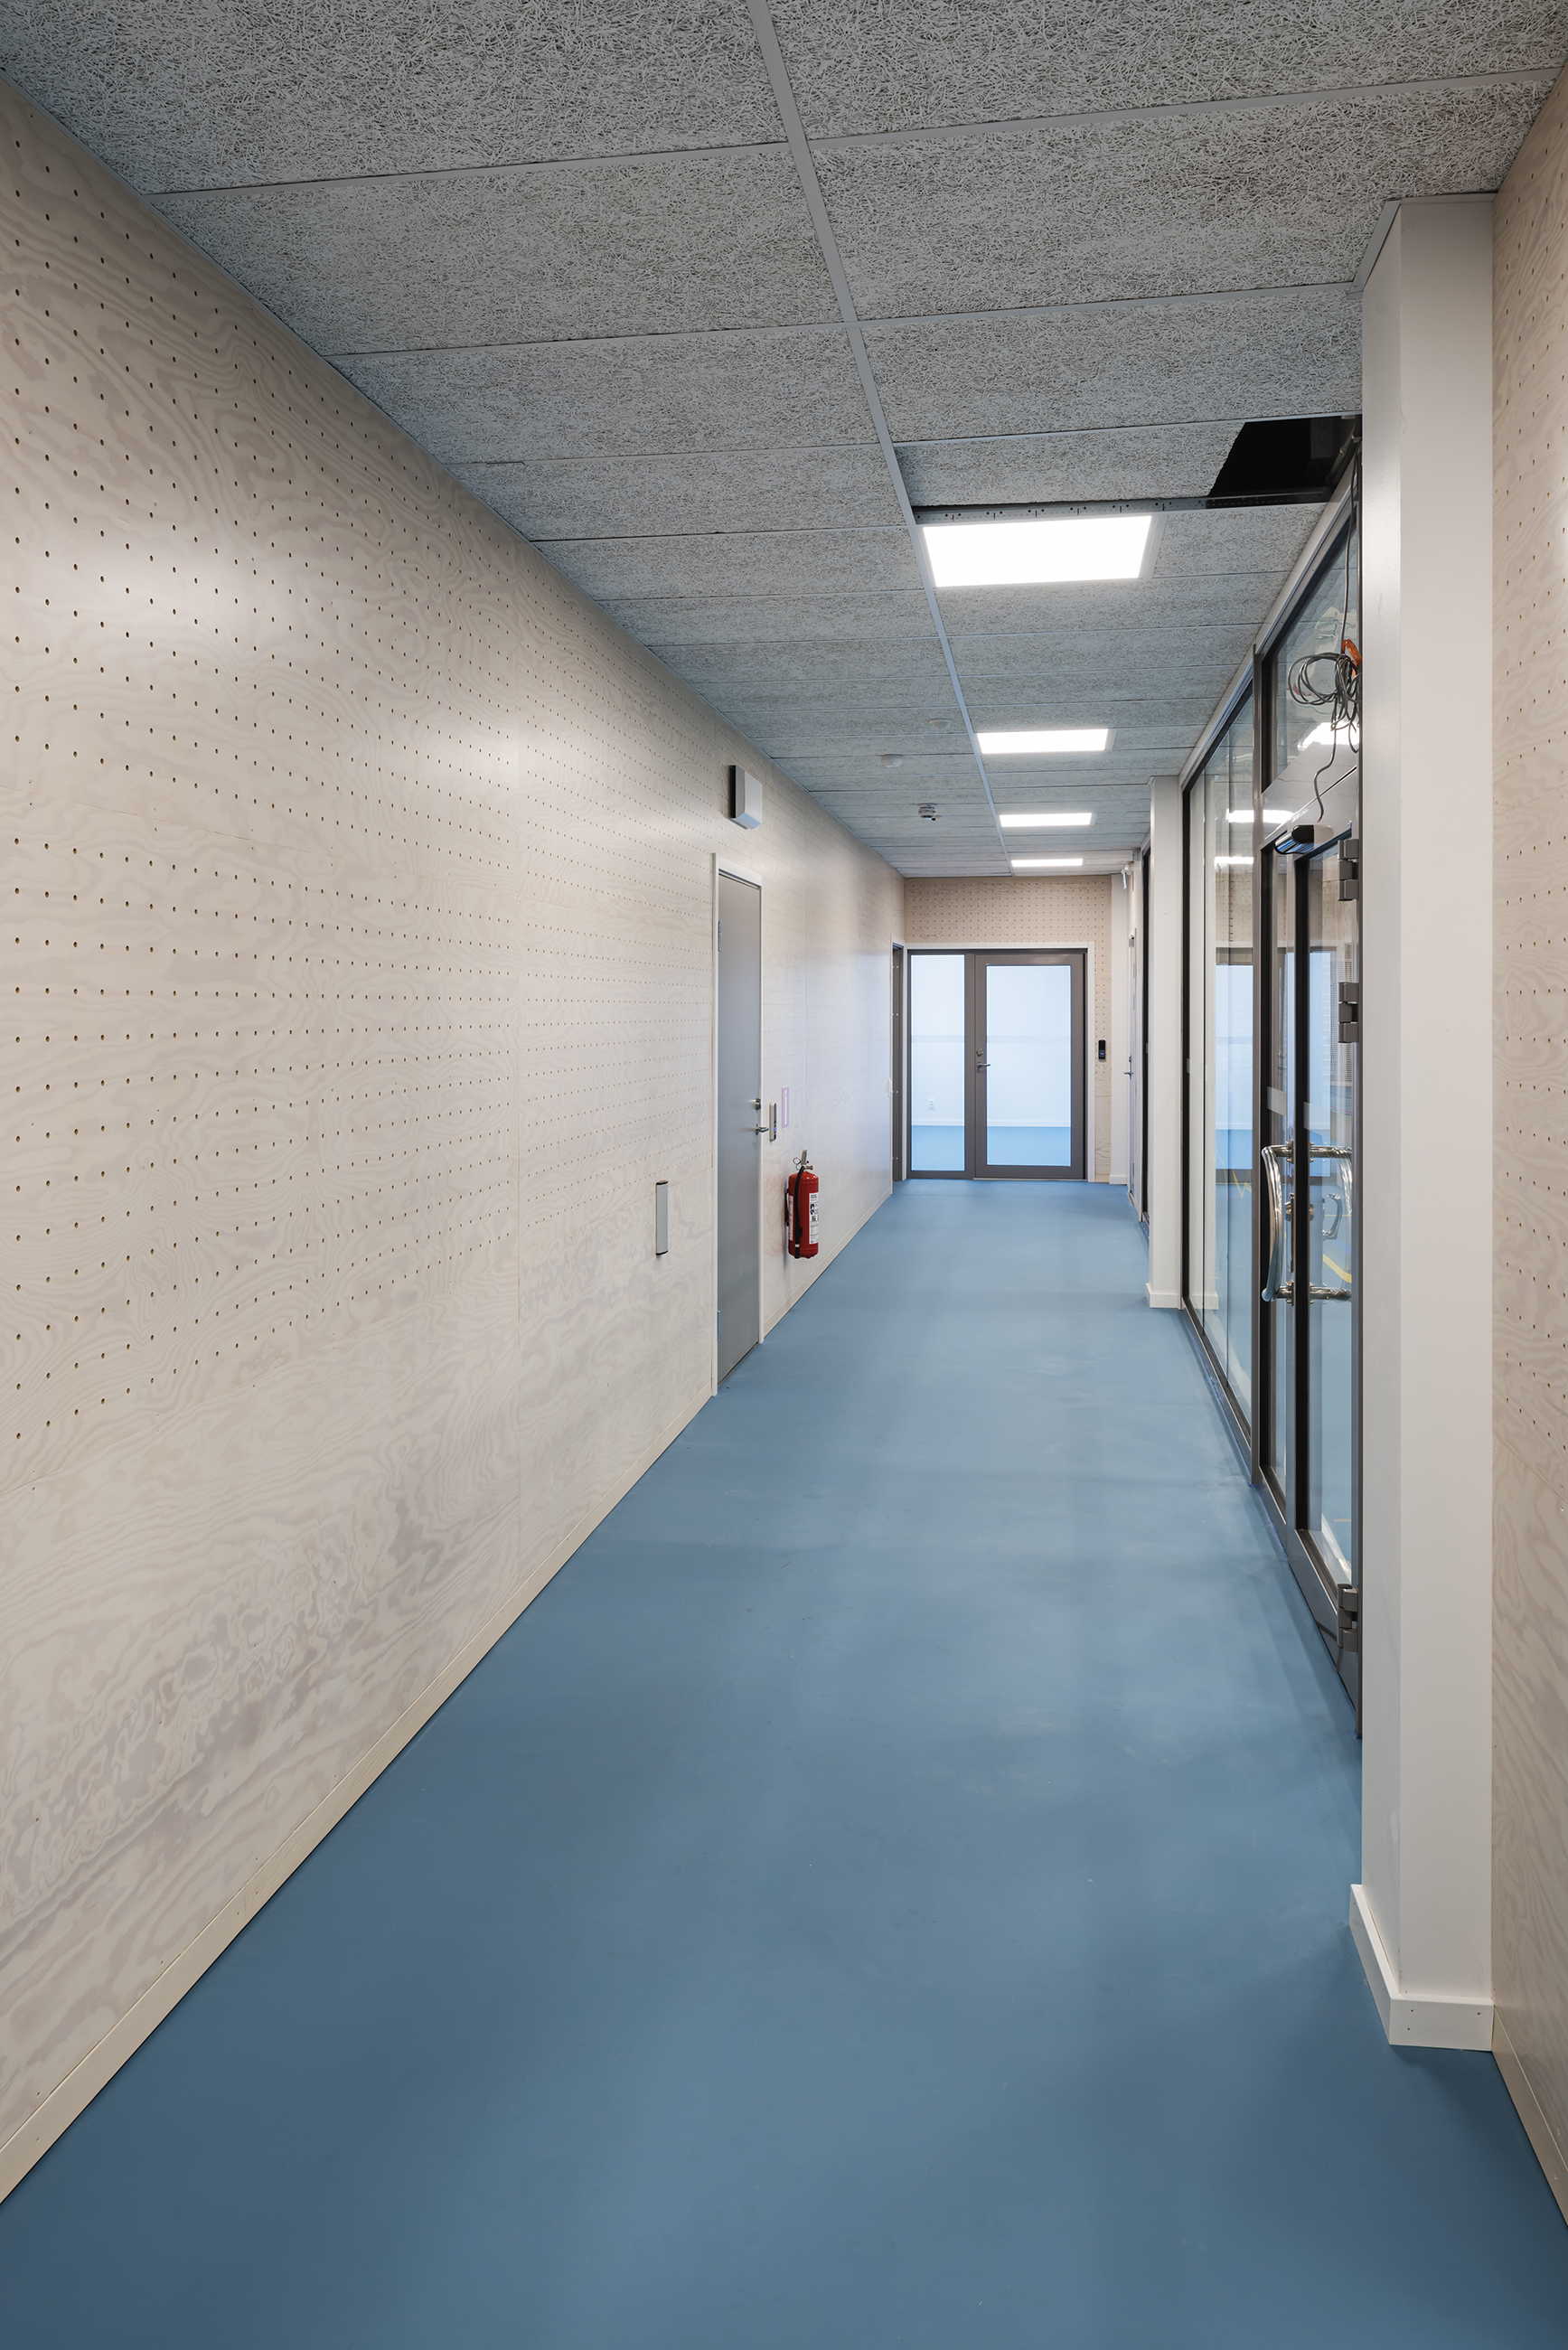 Korridor med perforerede paneler på vægge og blåt gymnastikgulv